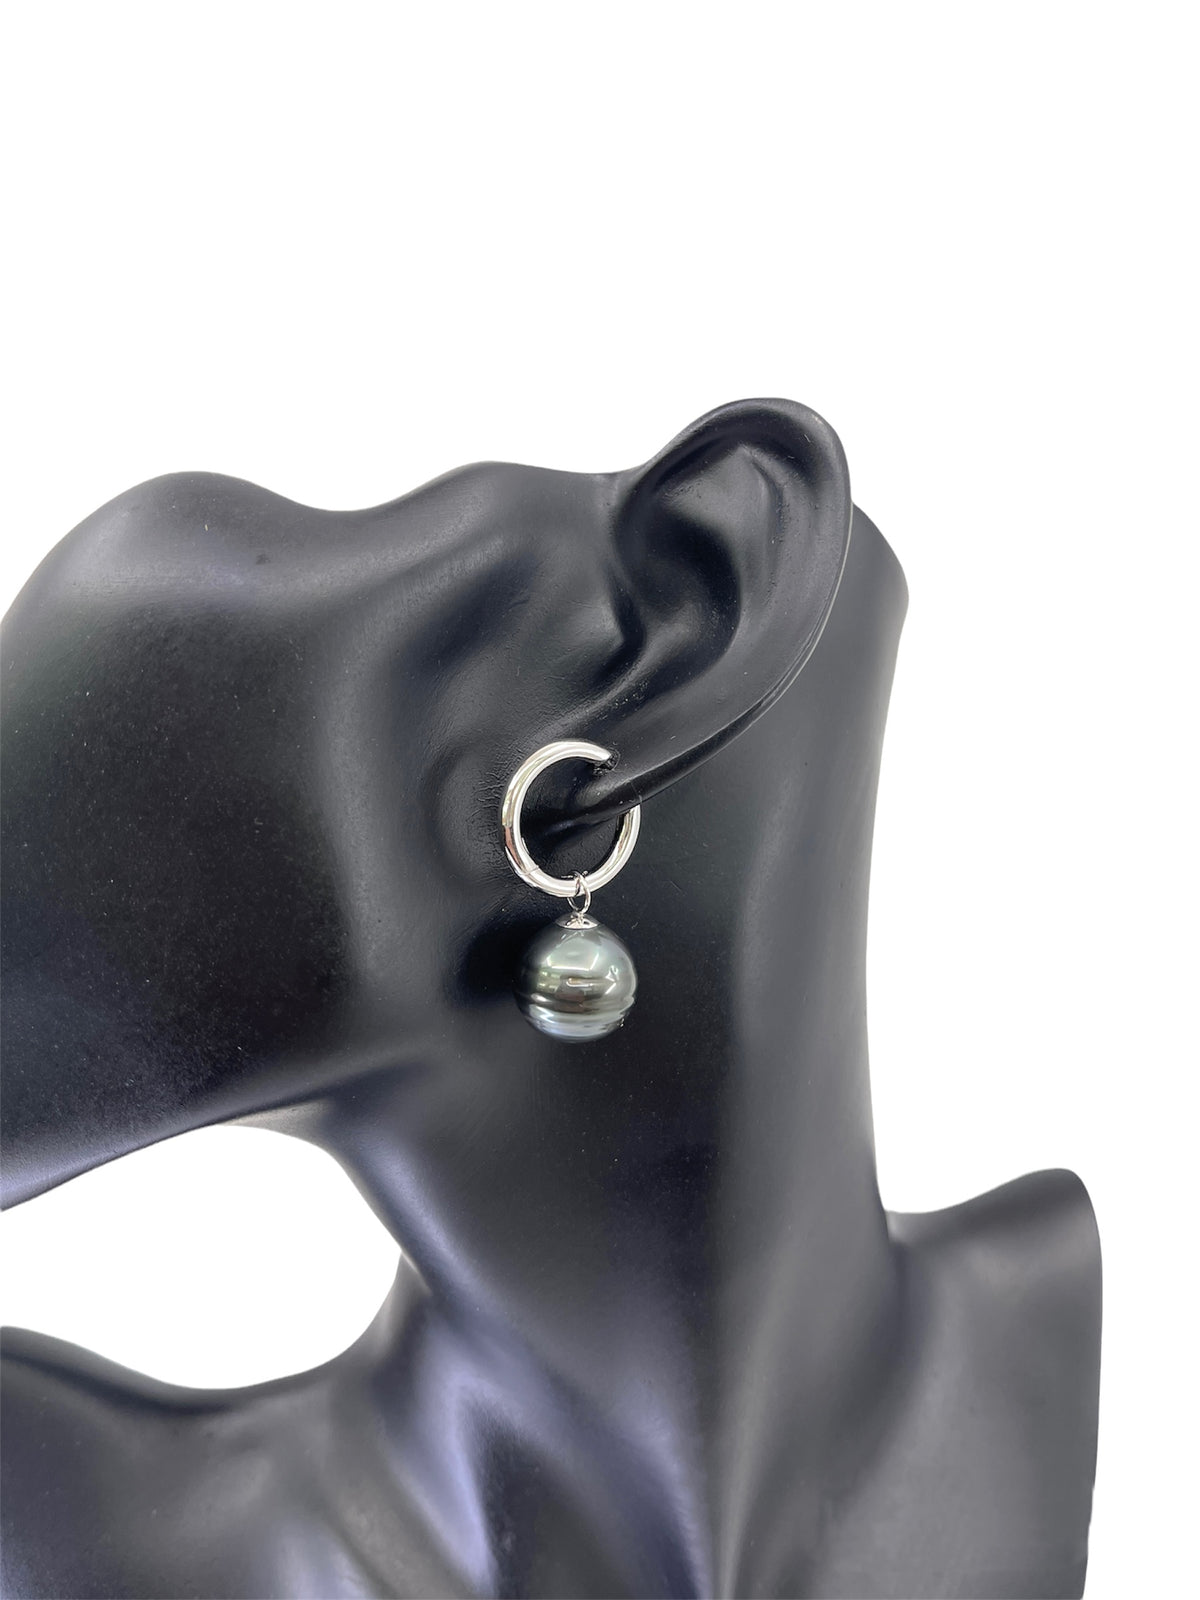 Sterling Silver Tahitian Pearl Dangle Earrings with Huggie Hoop Closure